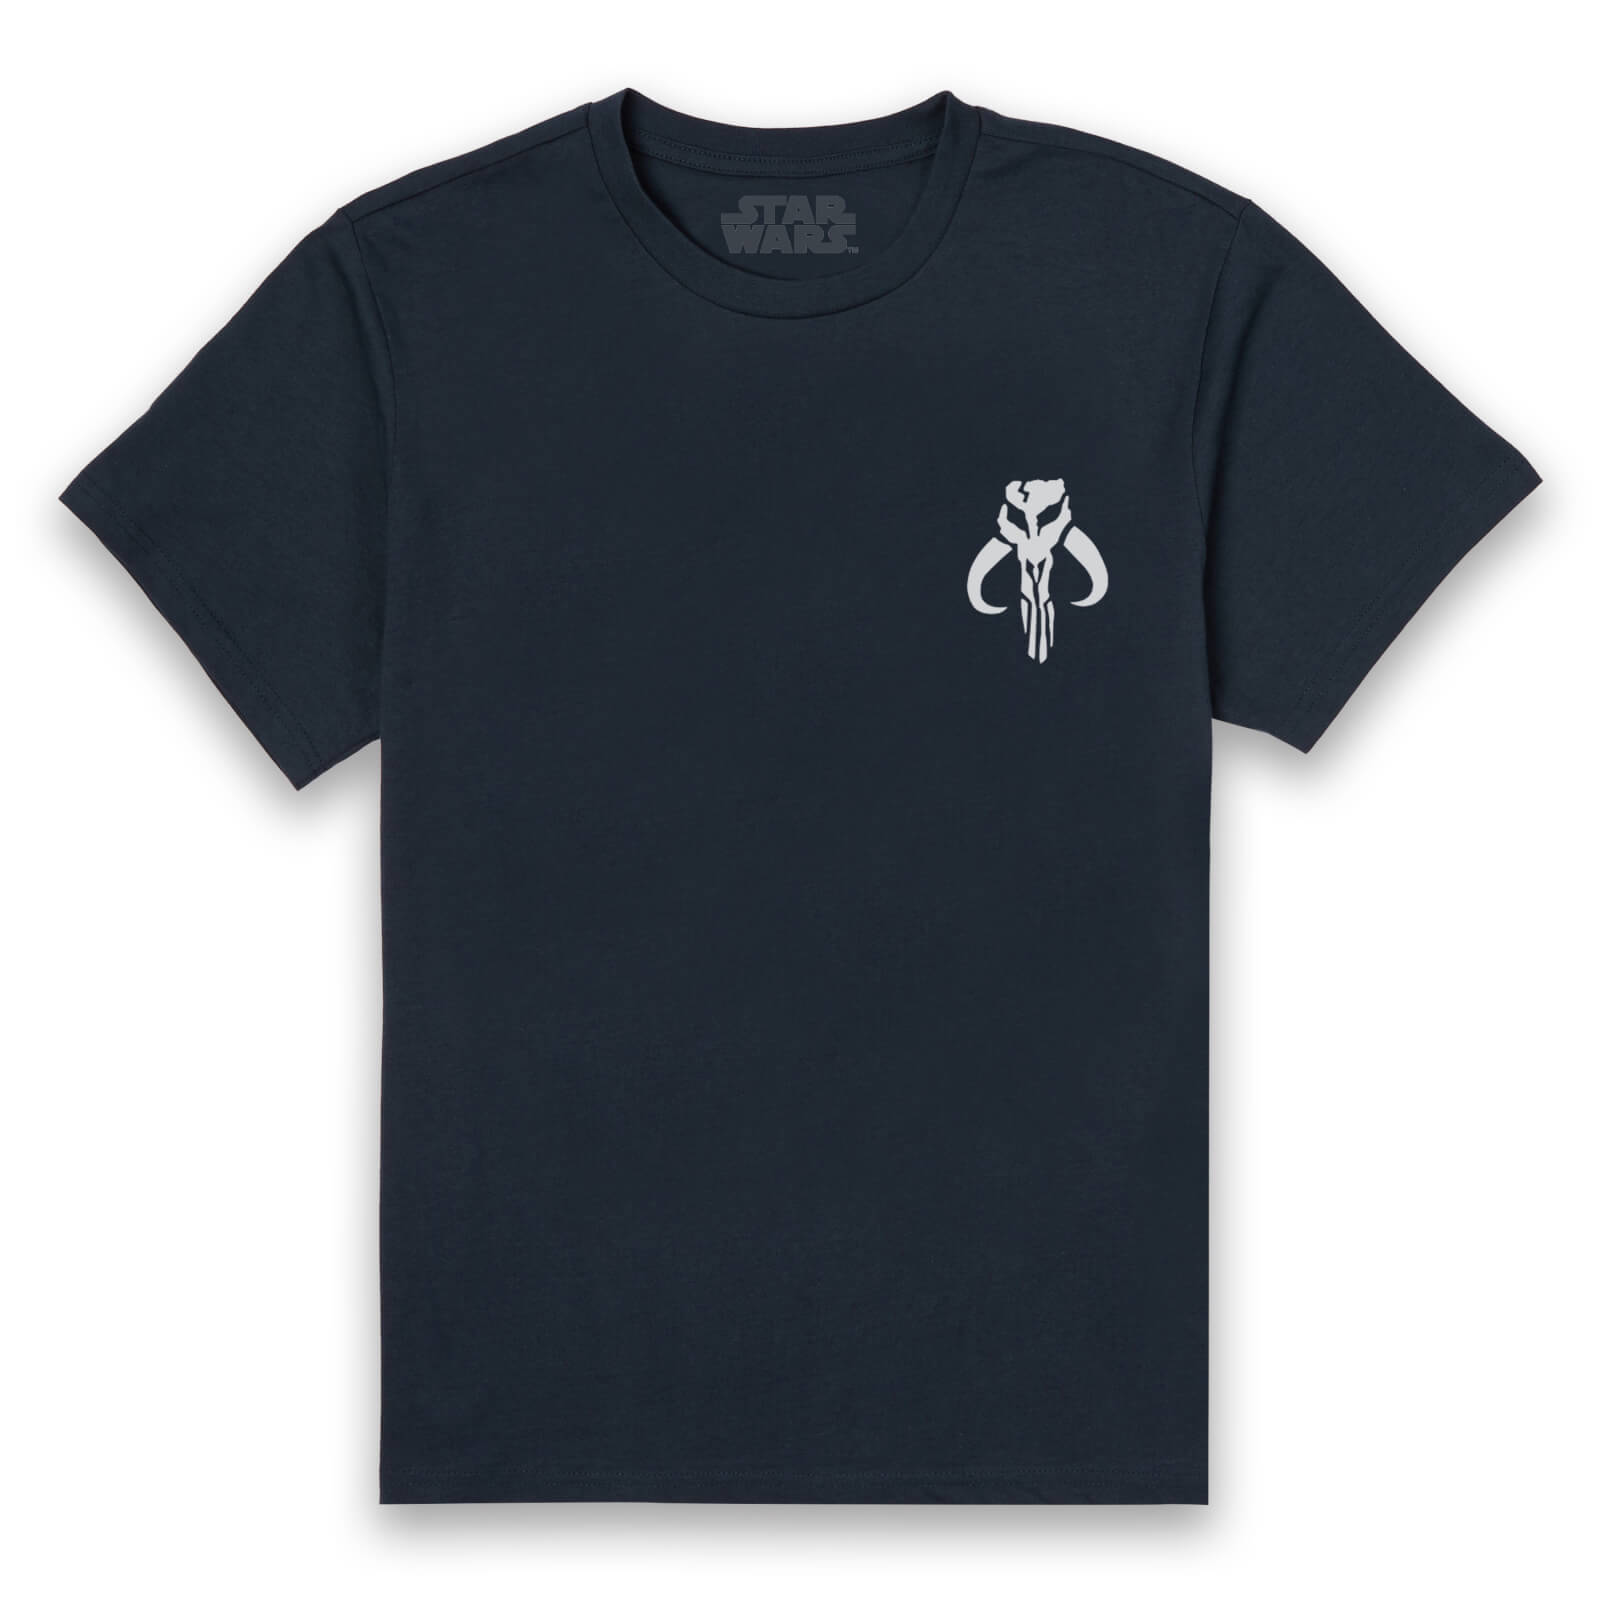 Star Wars Crest Unisex T-Shirt - Navy - S - Navy blauw